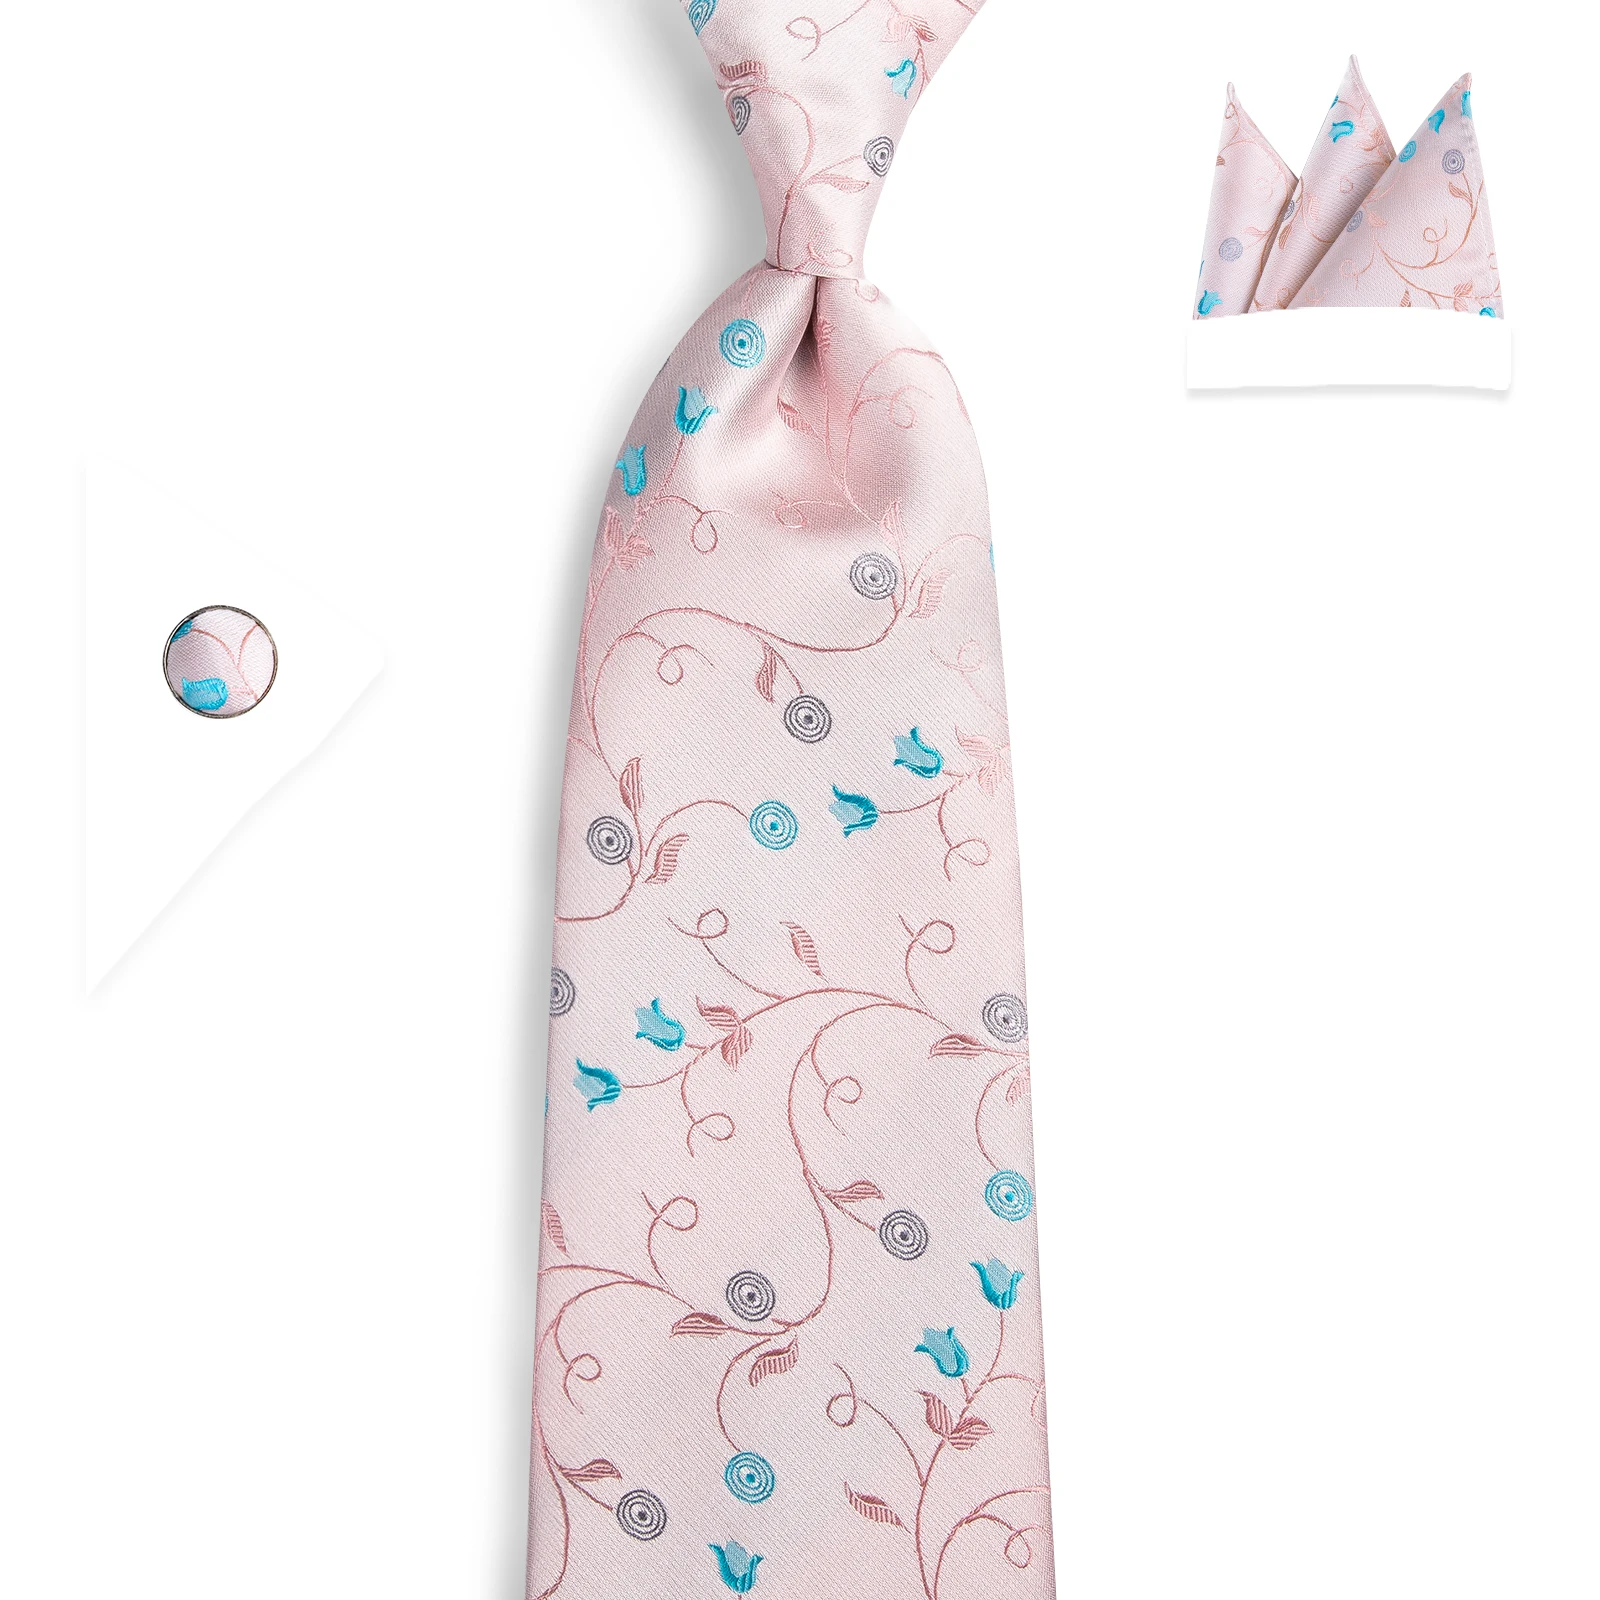 DiBanGu Топ Дизайнер Розовый Цветочные Галстук 100% шелк 160 см галстук носовой платок запонки галстук для Для мужчин Бизнес Свадебный галстук